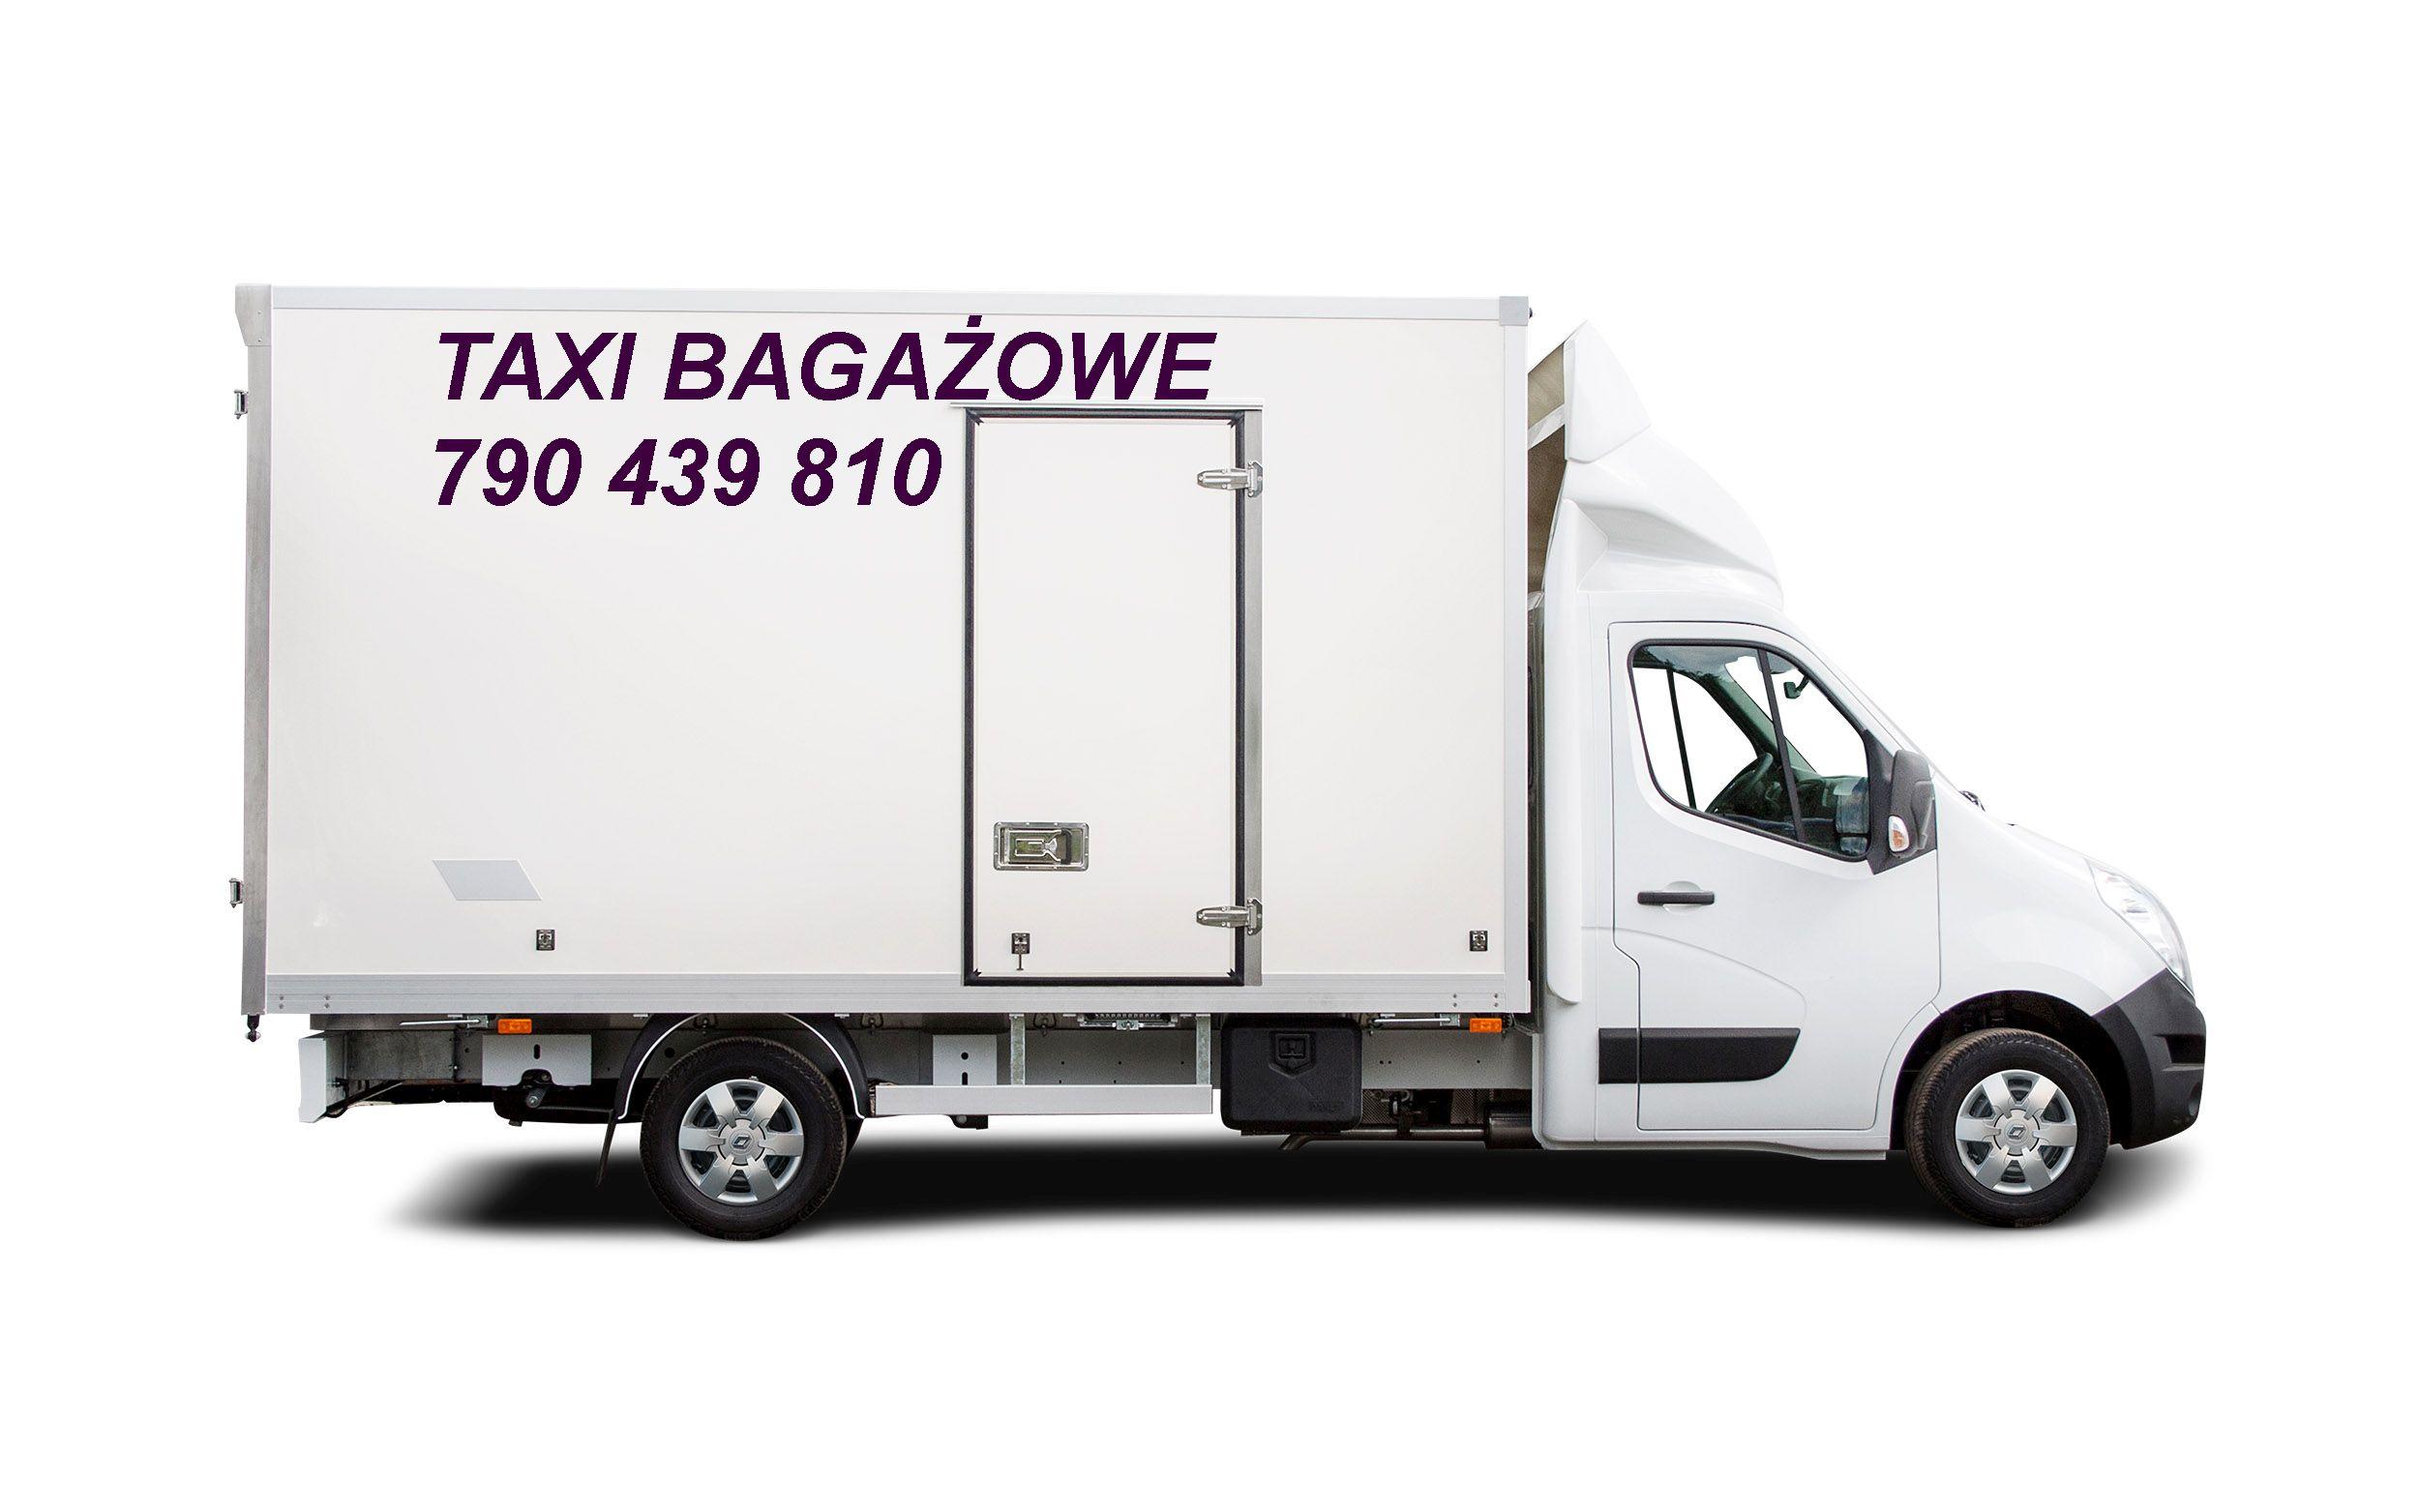 Taxi bagażowe Kraków 24h/7 transport przeprowadzki, małopolskie